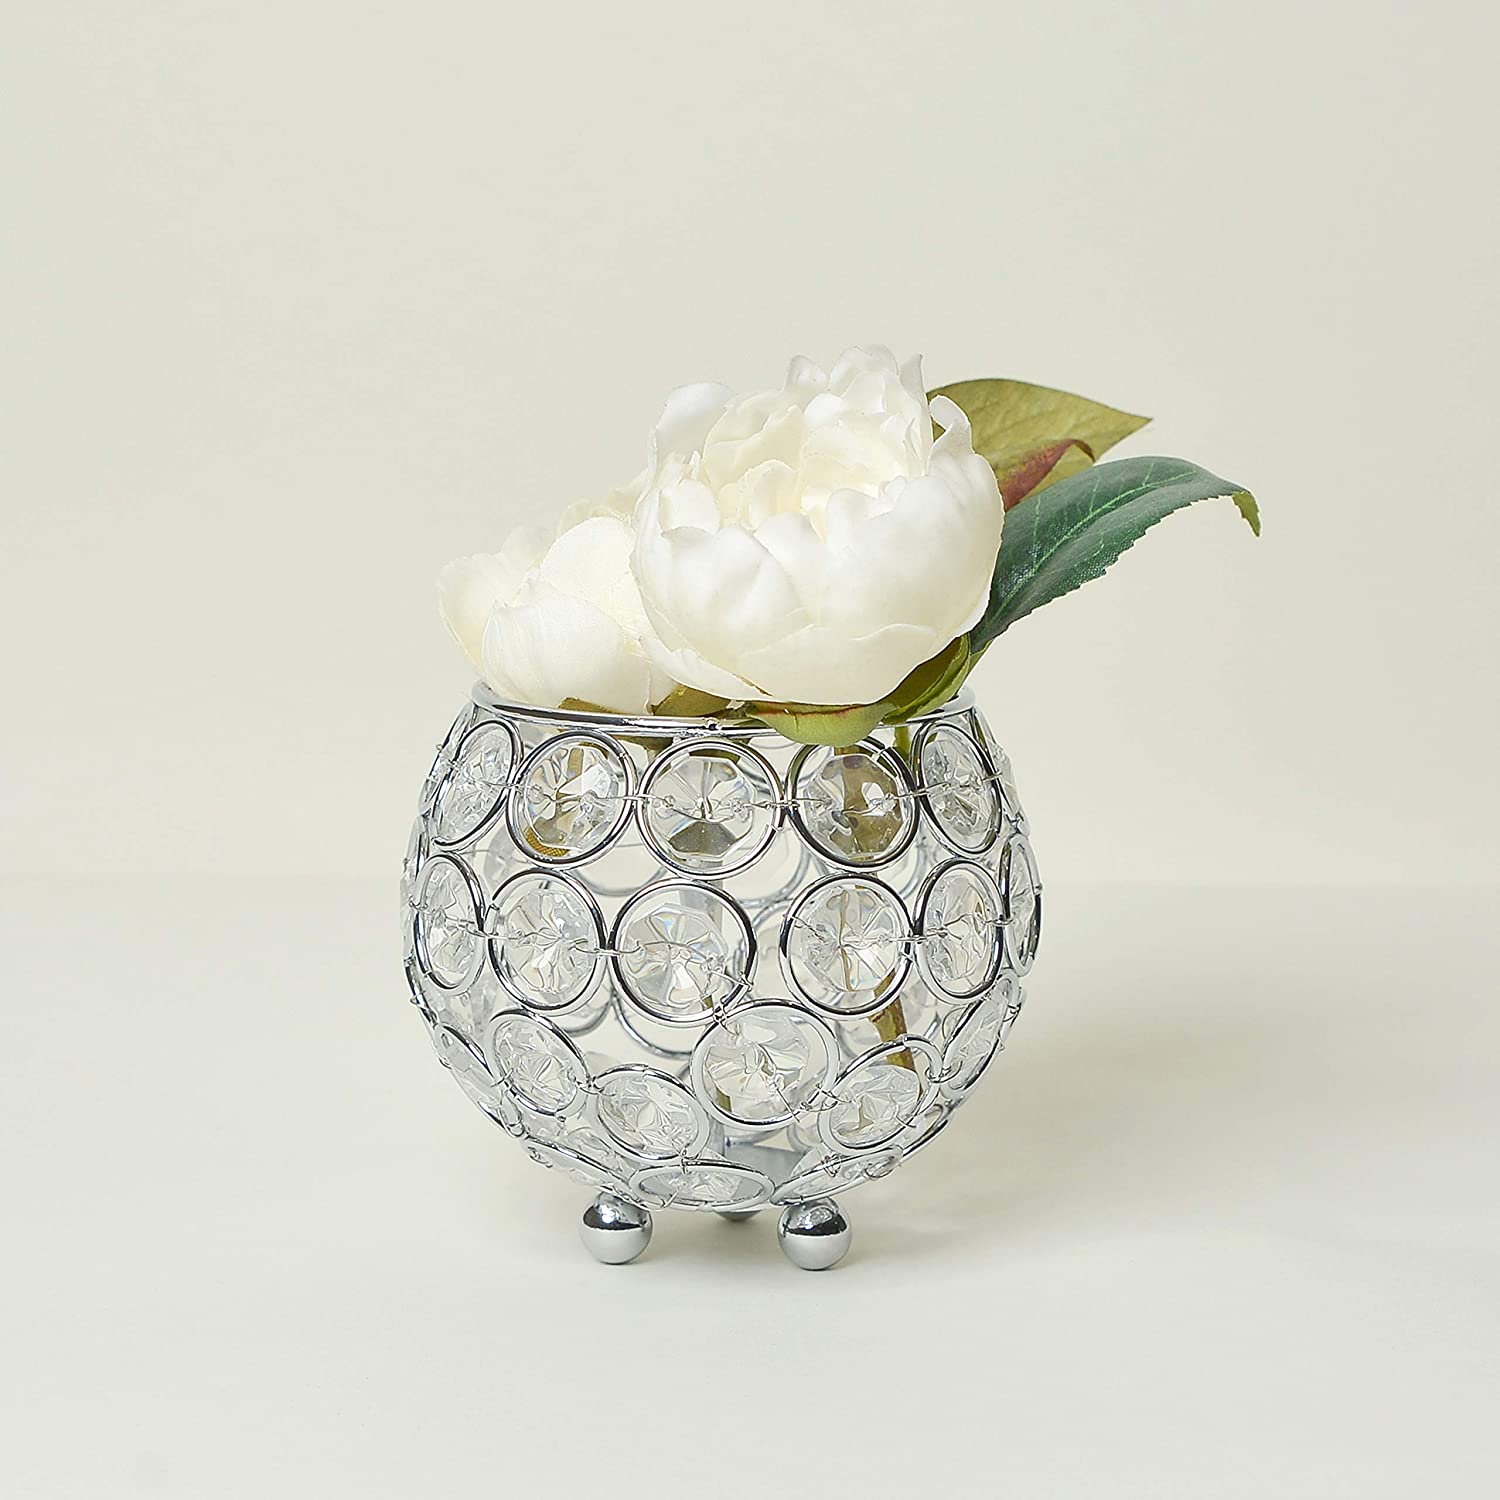 Elegant Designs Elipse Crystal Circular Bowl Candle Holder, Flower Vase, Wedding Centerpiece, Favor, 3.75 Inch, Chrome